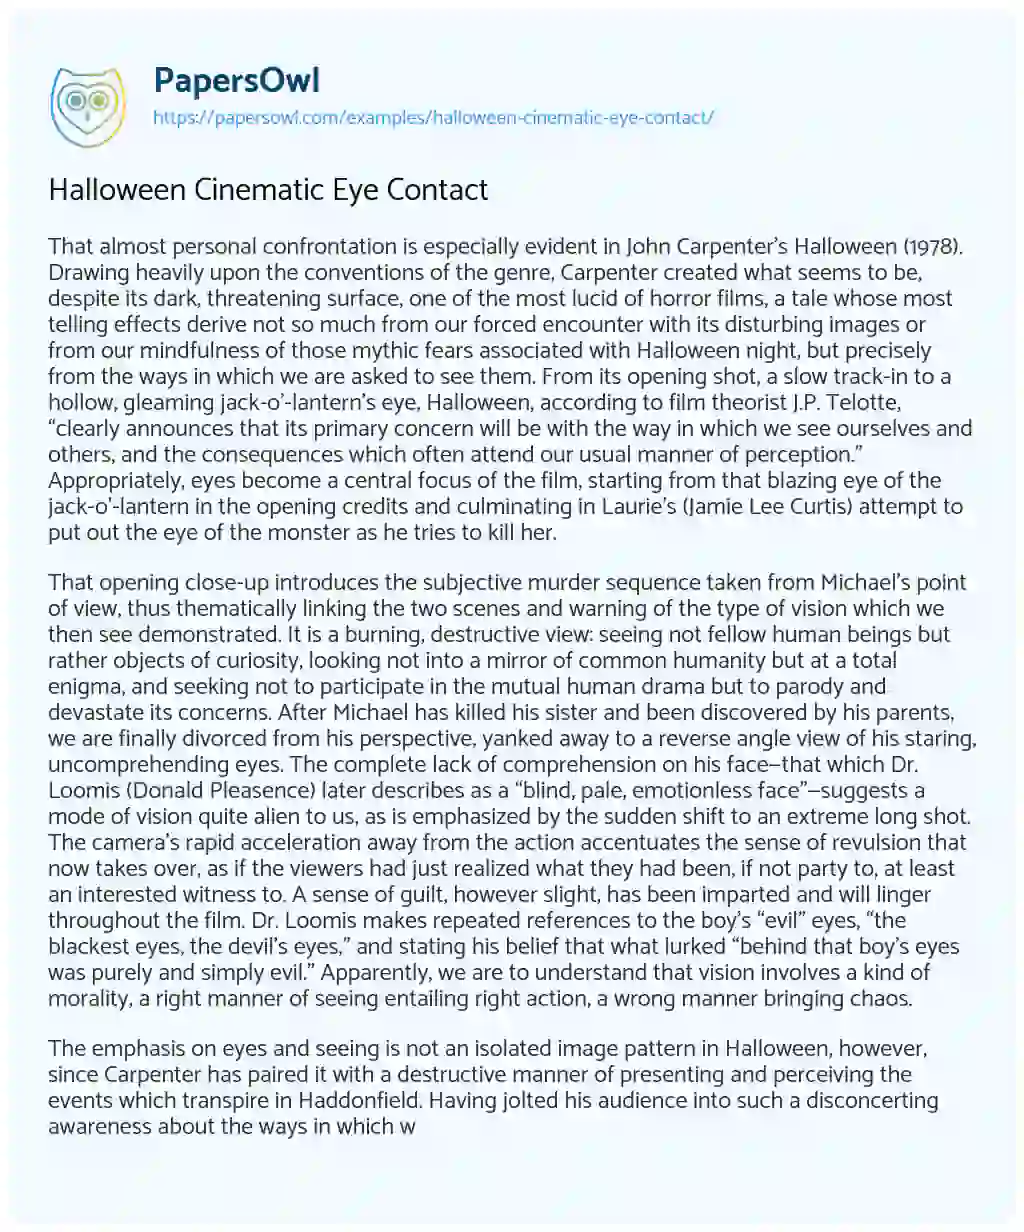 Essay on Halloween Cinematic Eye Contact